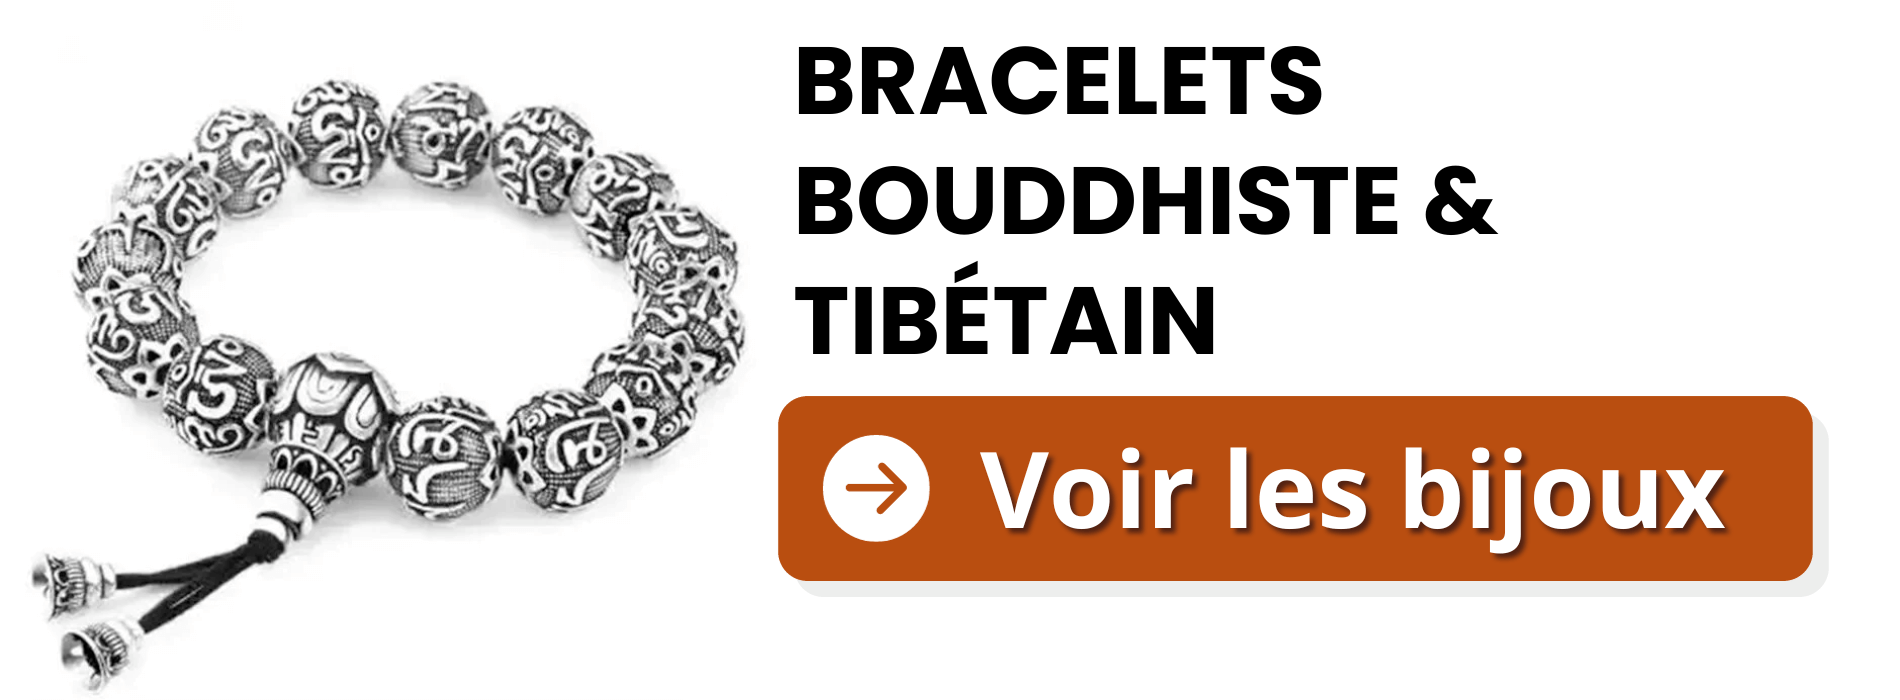 bracelets- Buddhist